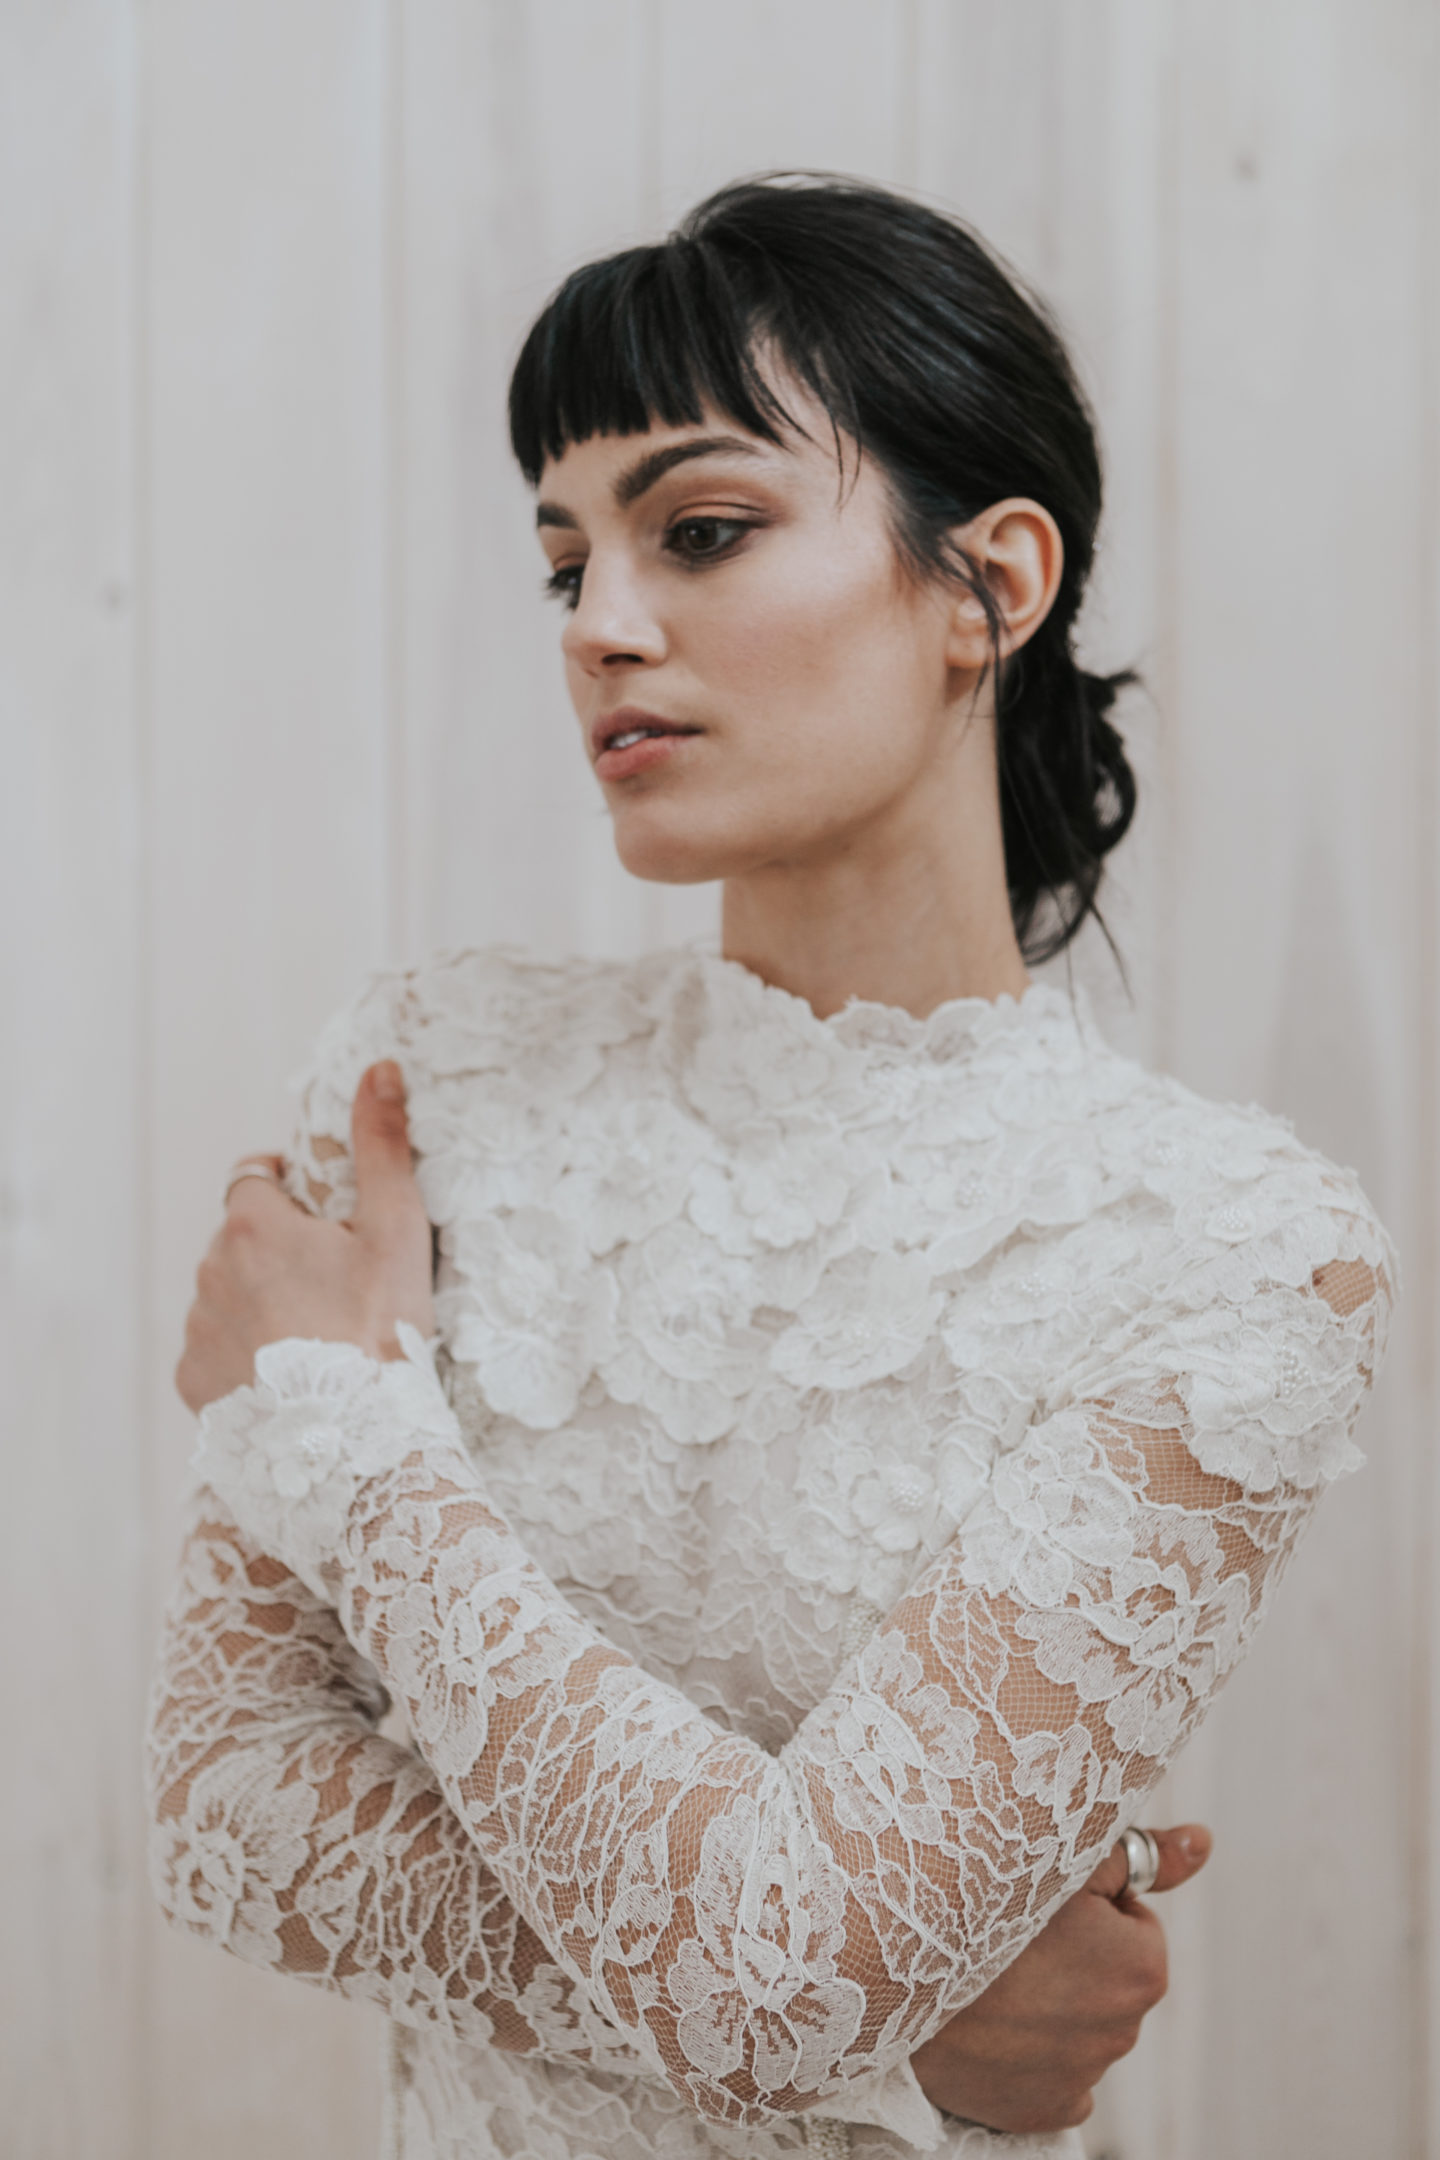 Supplier Spotlight: British Wedding Dress Designer Julita London